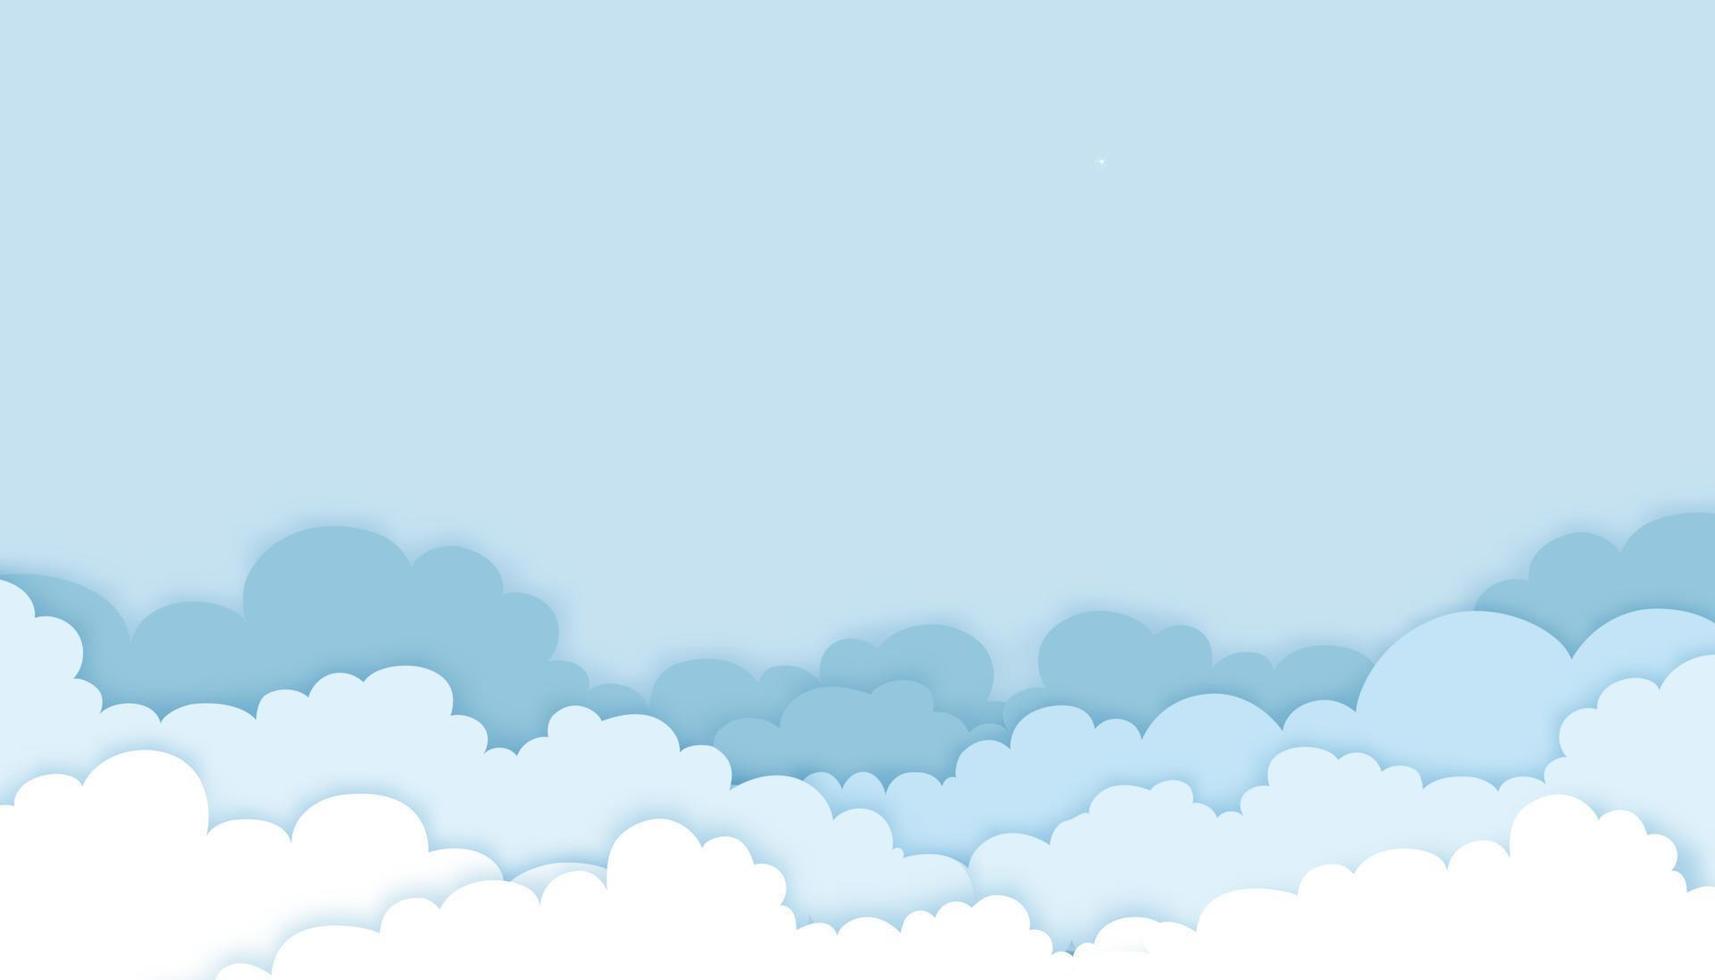 origami moln med blå himmel bakgrund, vektor illustration molnlandskap lager 3d papper skär konst stil med kopia utrymme för text. horisontell banner för vårrea eller sommarsäsong